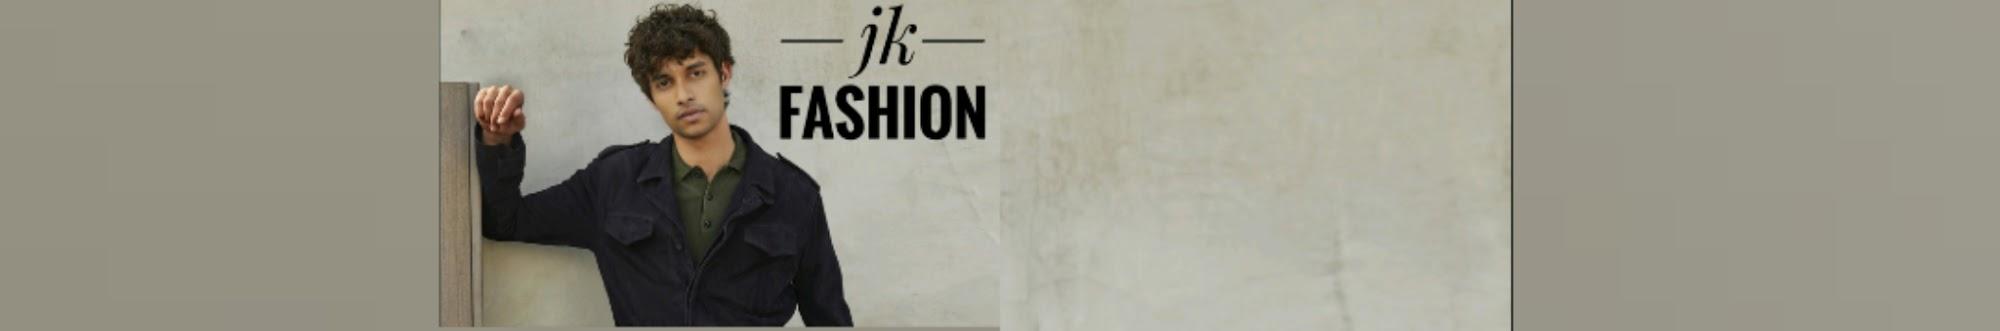 Jk fashion